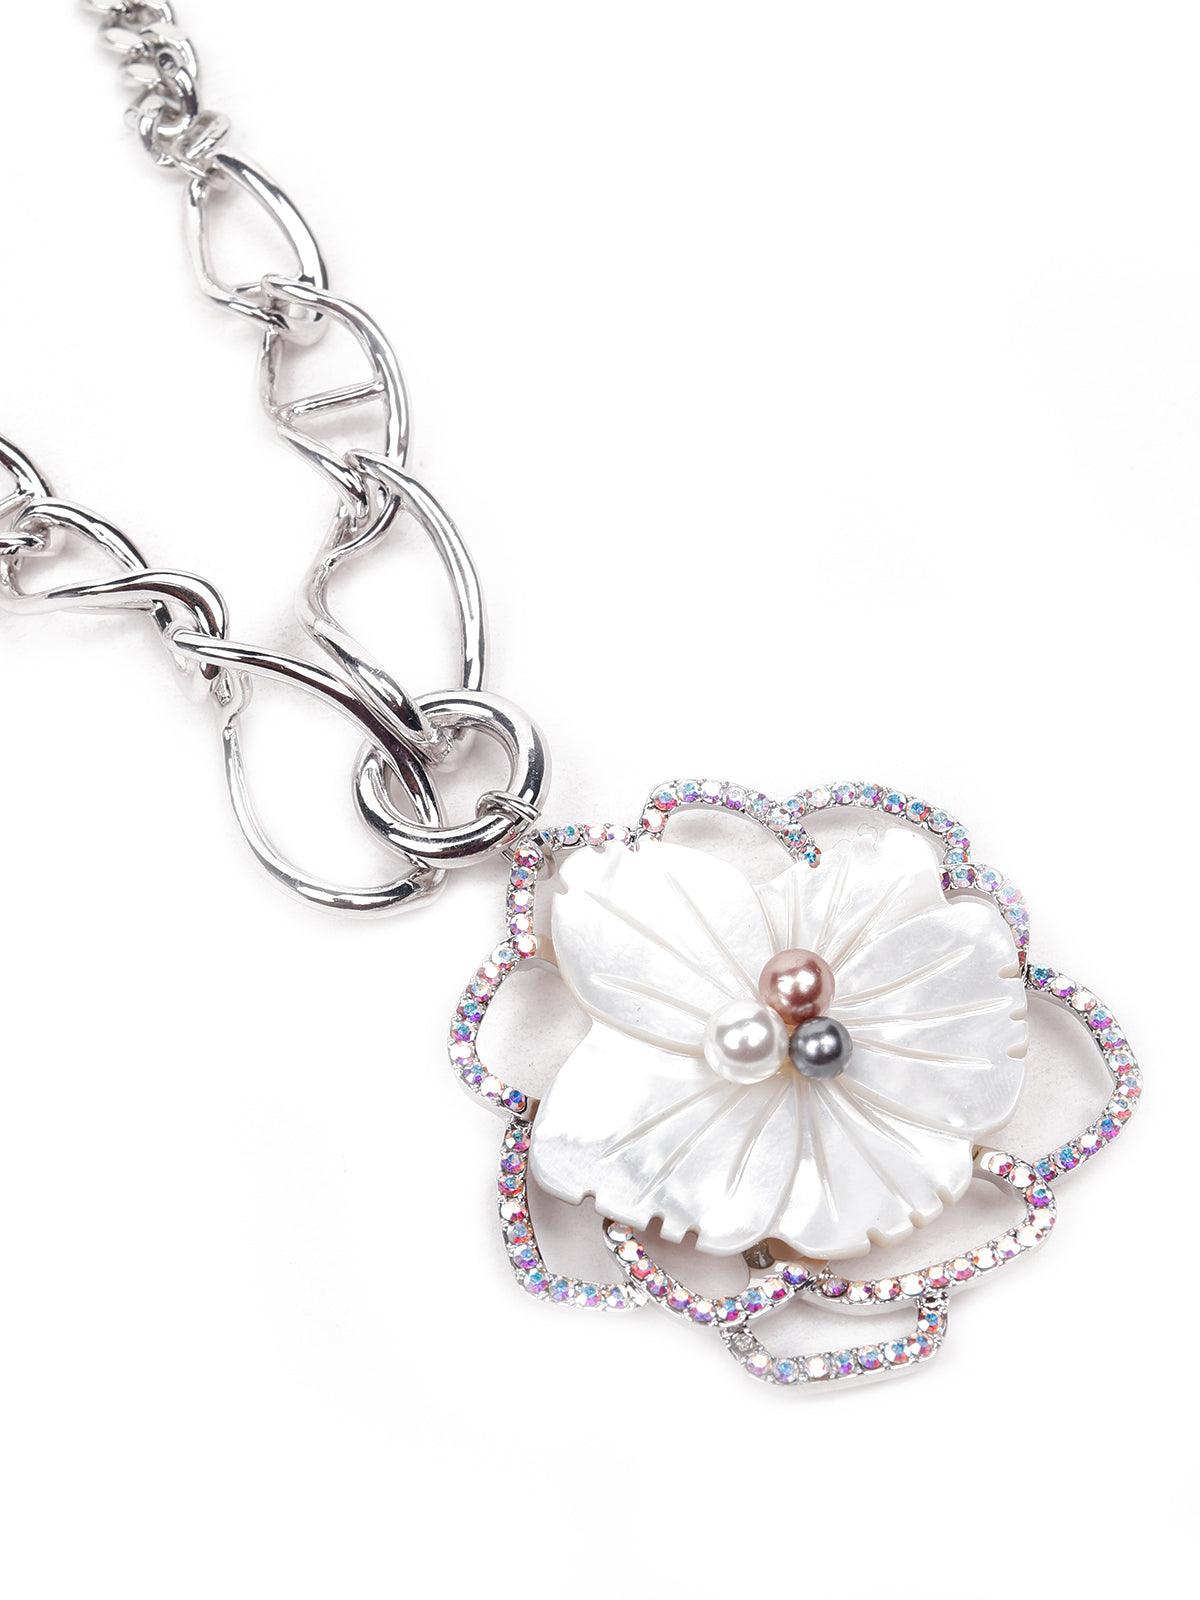 Gorgeous floral pendant silver necklace - Odette